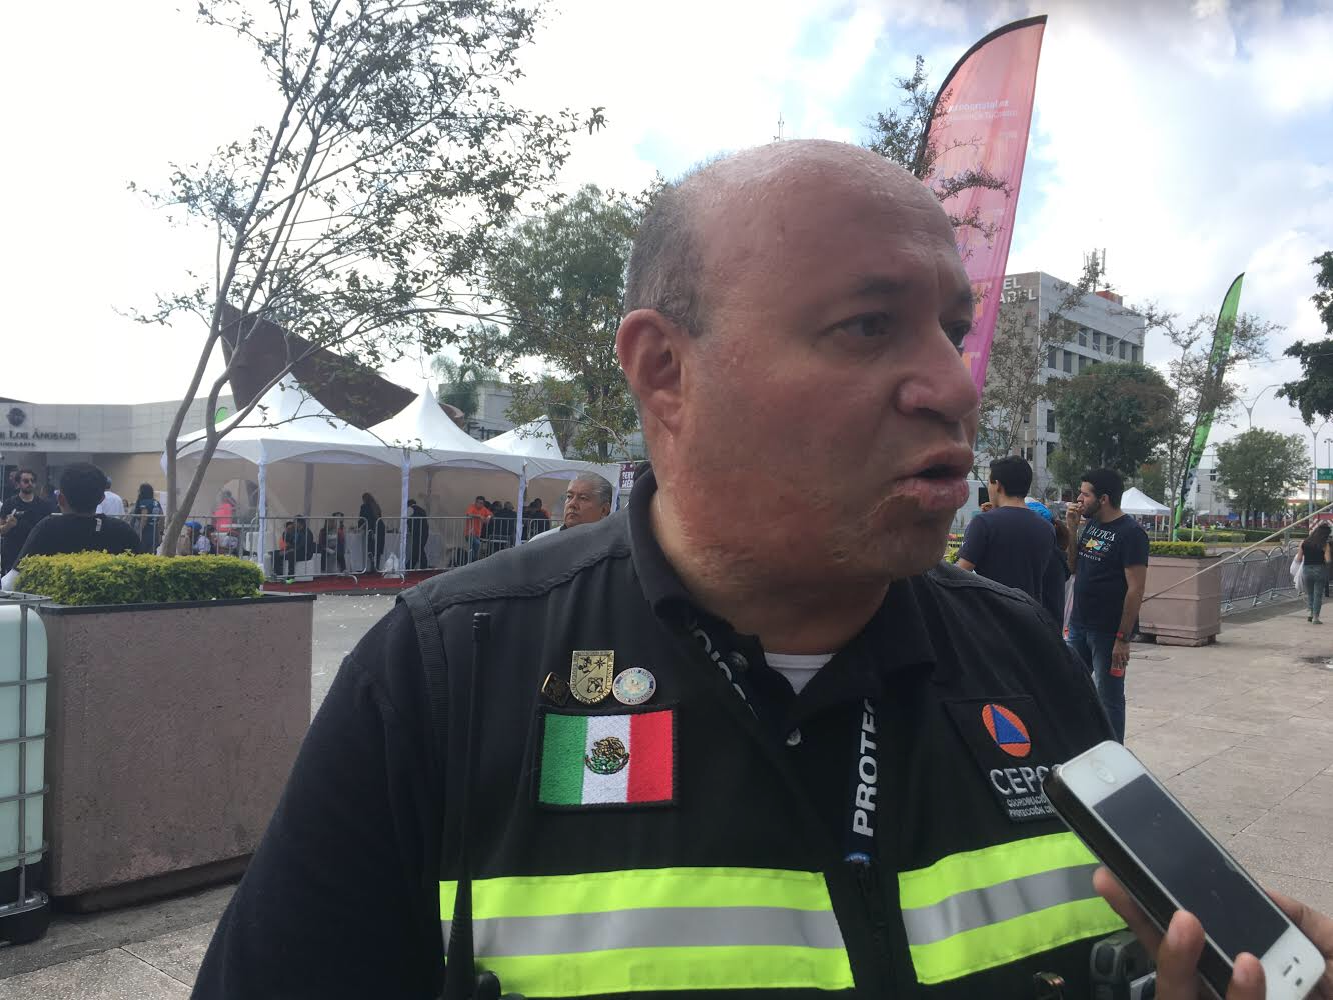  Protección Civil reporta saldo blanco durante el Querétaro Maratón 2018